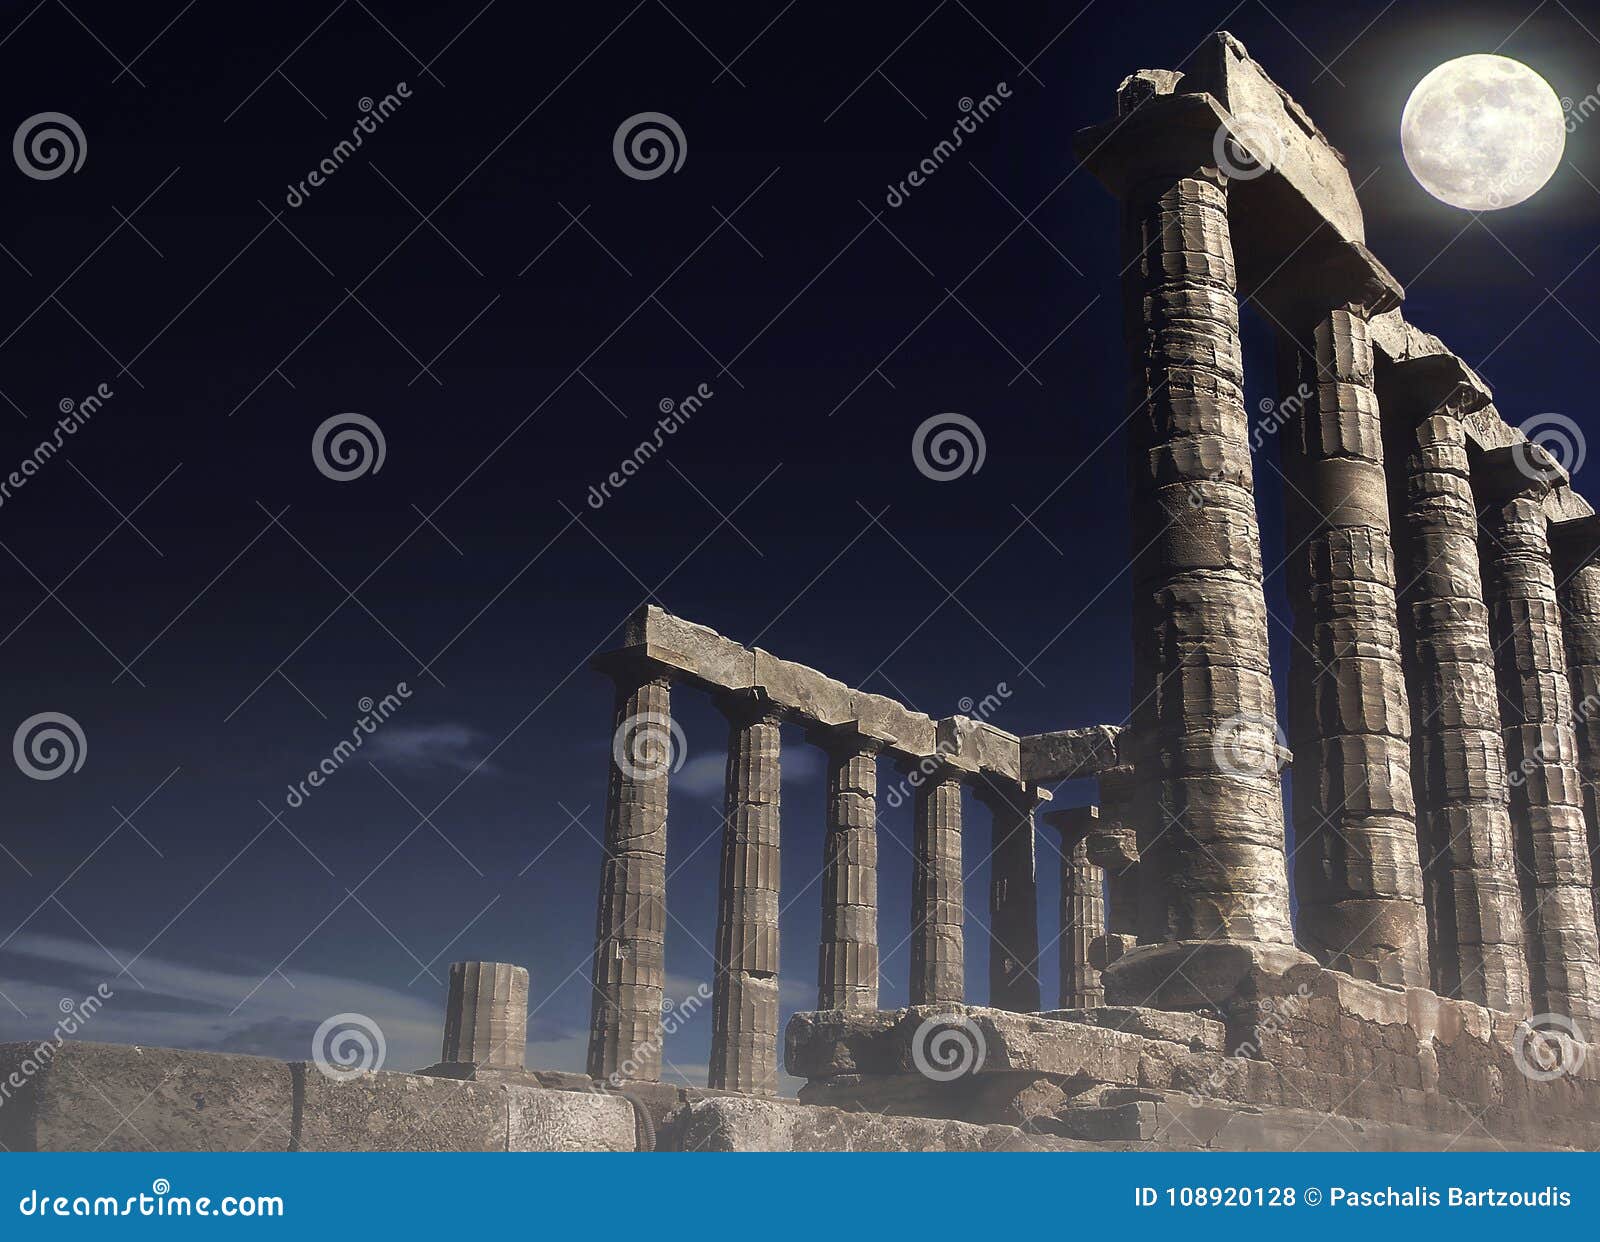 poseidon`s temple at cape sounion under full moon - attica, greece